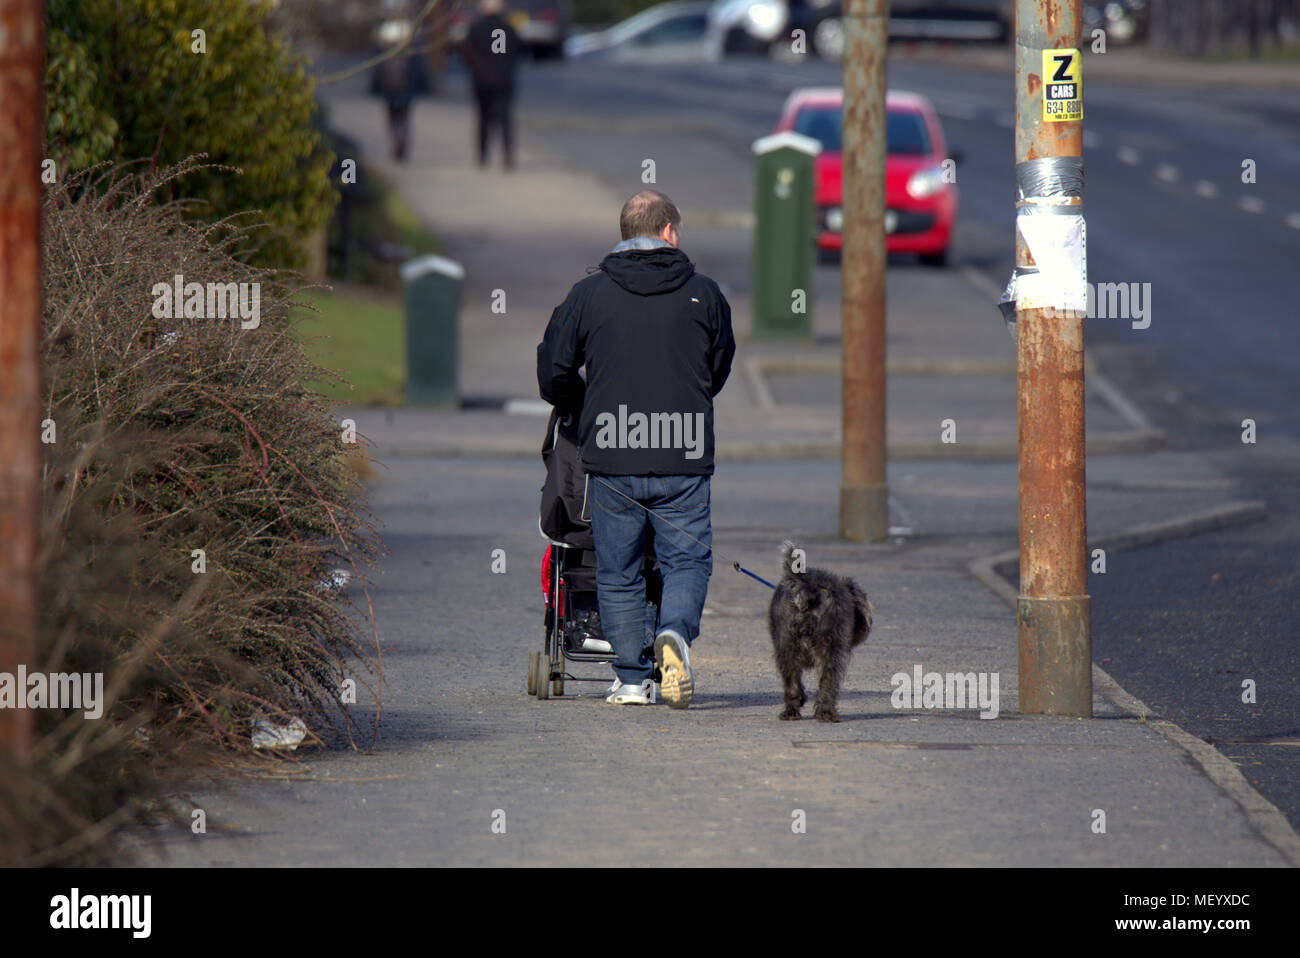 Lokale Leute Mann schieben Kinderwagen auf der Straße gehsteig Bürgersteig gehen Hund Castlemilk, Glasgow, Großbritannien Stockfoto